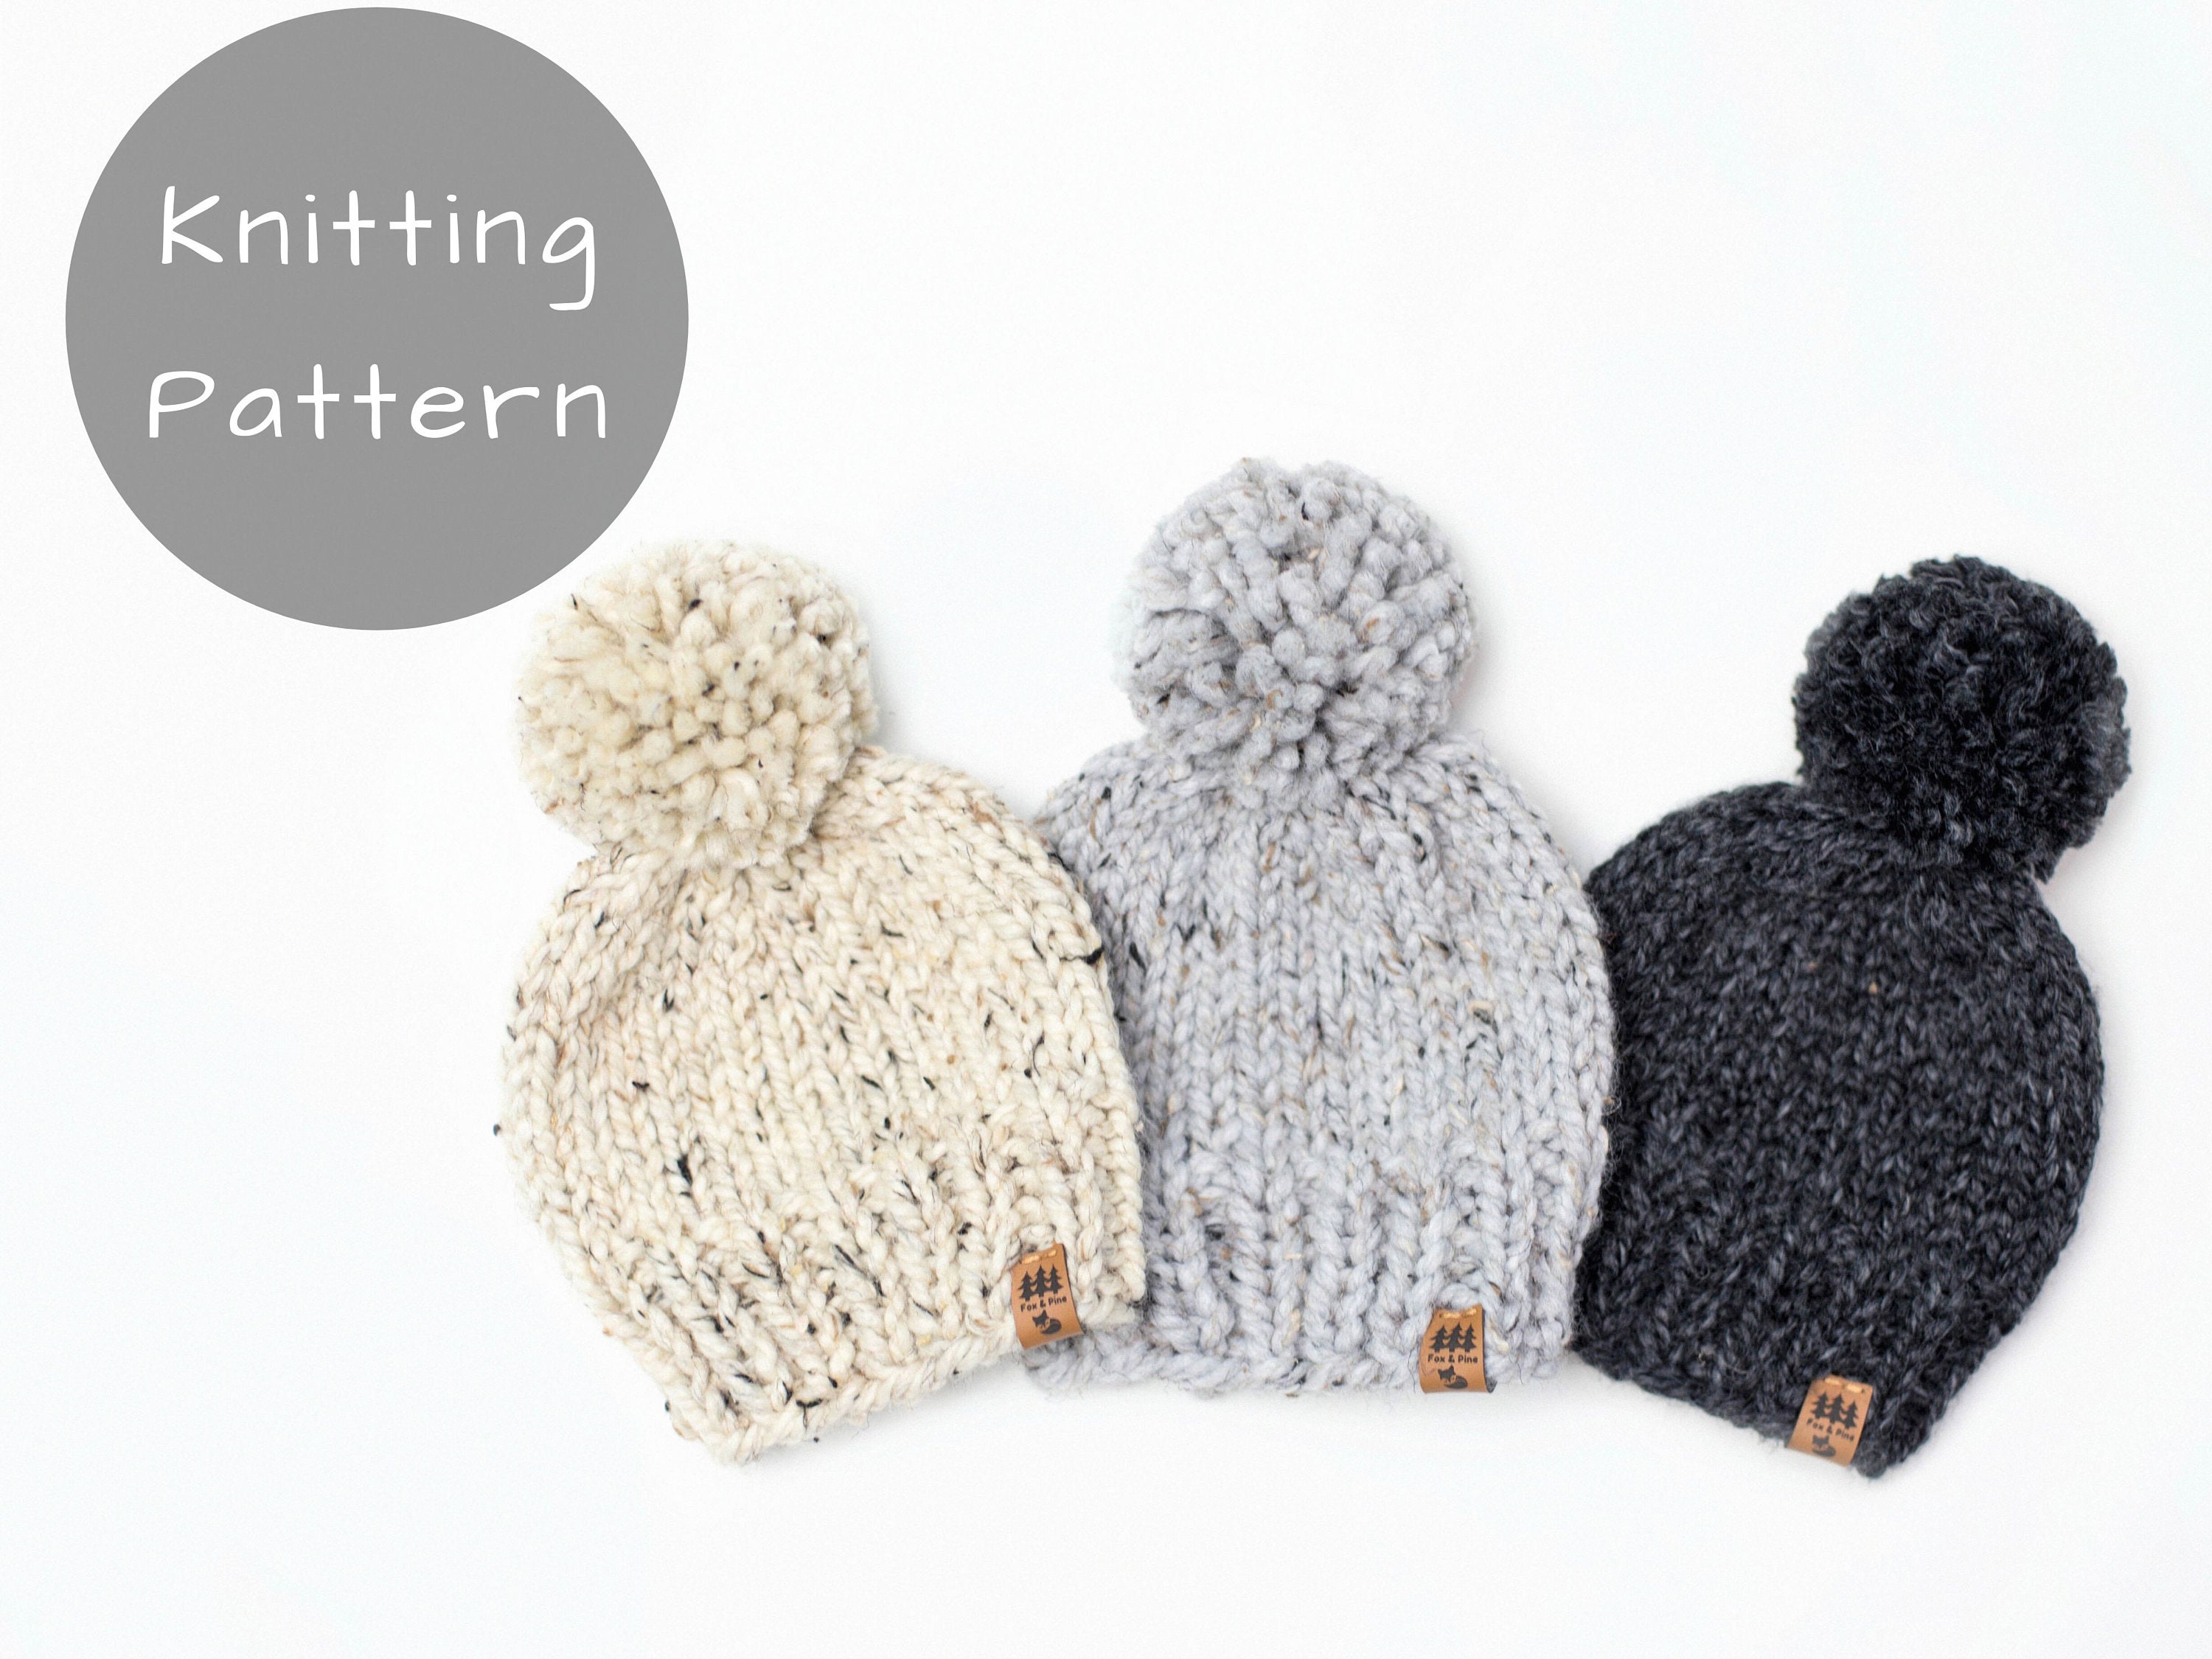 Pom pom hat knitting pattern - Gathered